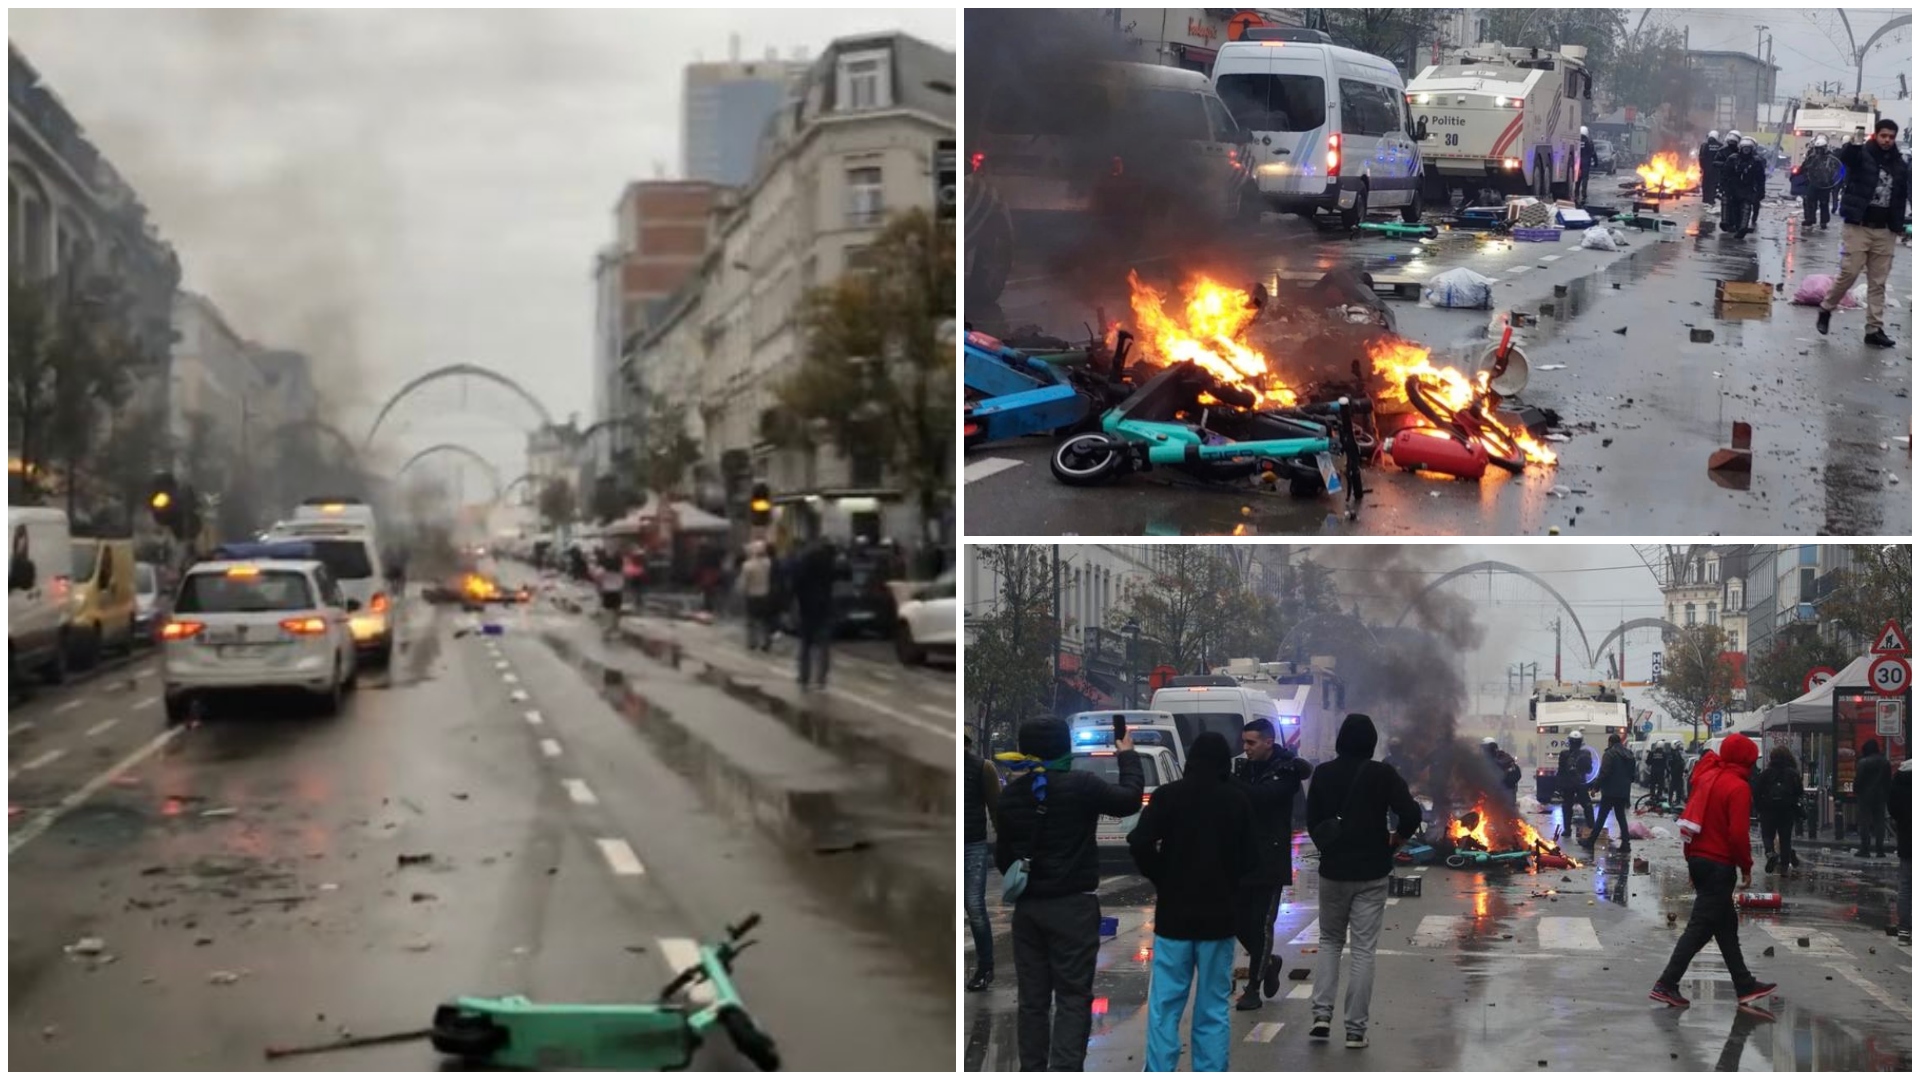 أعمال شغب في بروكسل 11 فوضى في بروكسل بعد هزيمة منتخب بلجيكا.. والشرطة تتدخل برذاذ الفلفل| صور وفيديو